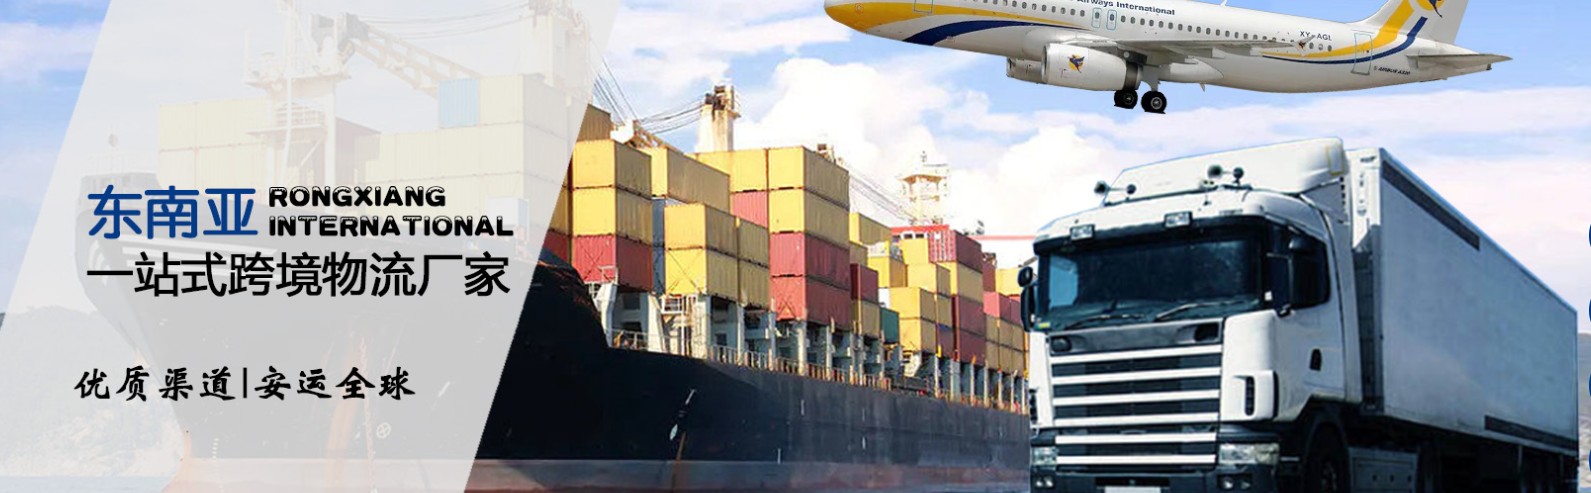 印尼货货运代理 印尼国际物流公司  印尼进出口报关公司 印尼国际货运代理有限公司